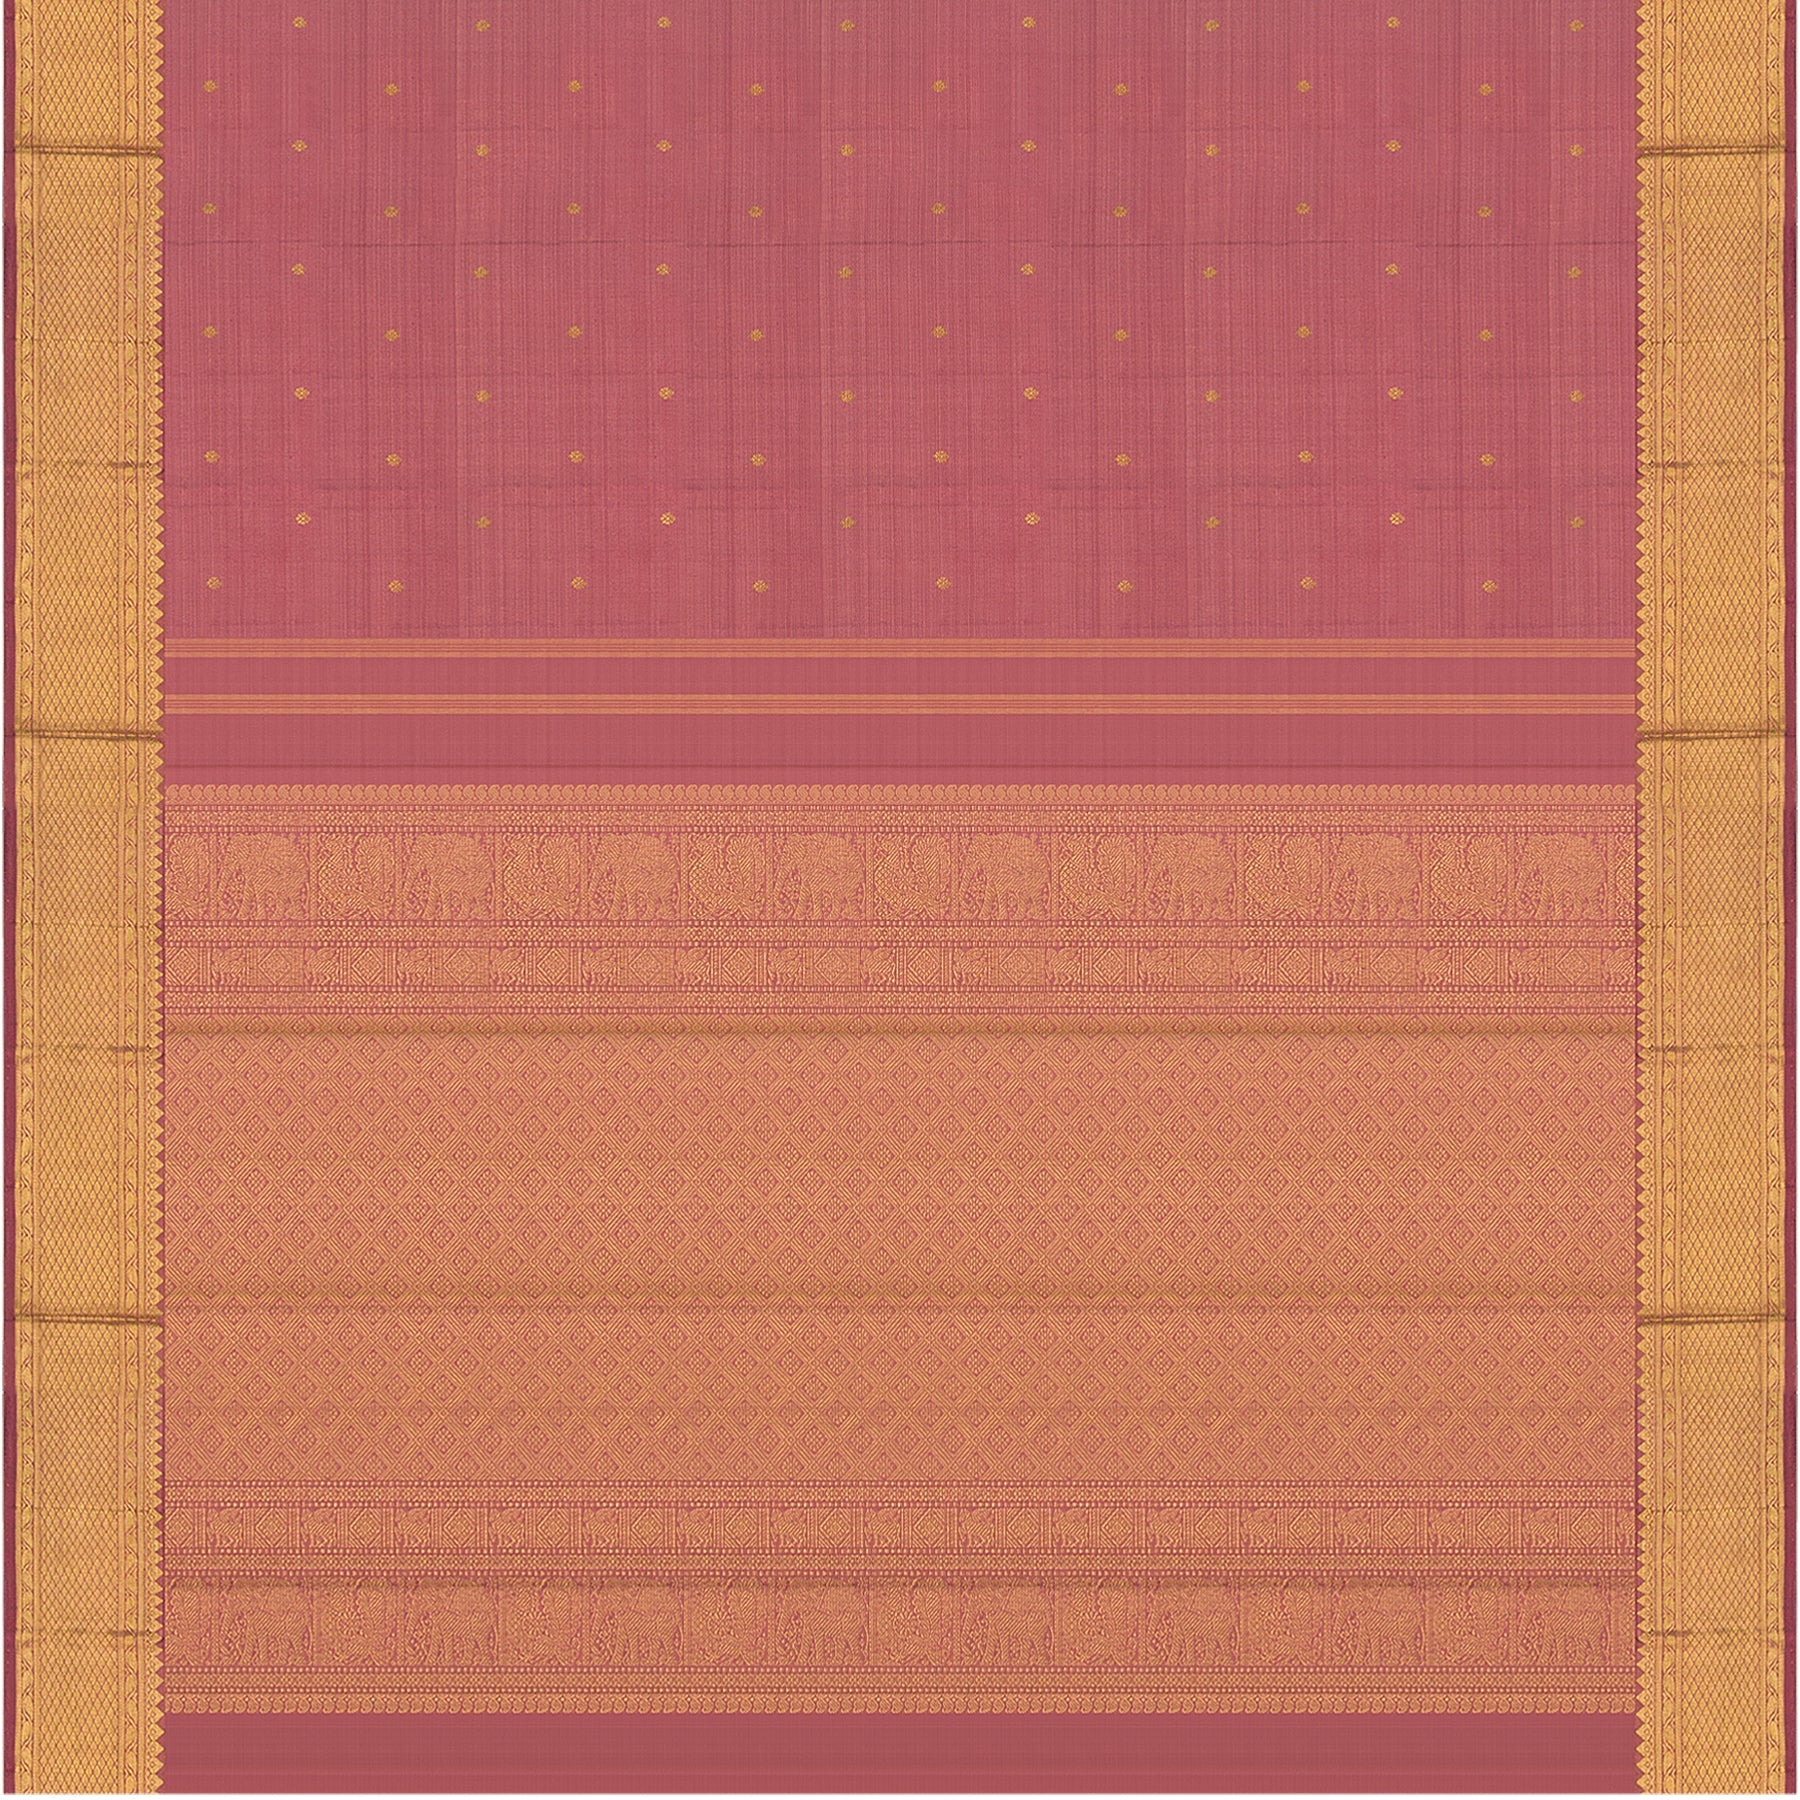 Kanakavalli Kanjivaram Silk Sari 22-599-HS001-05810 - Full View